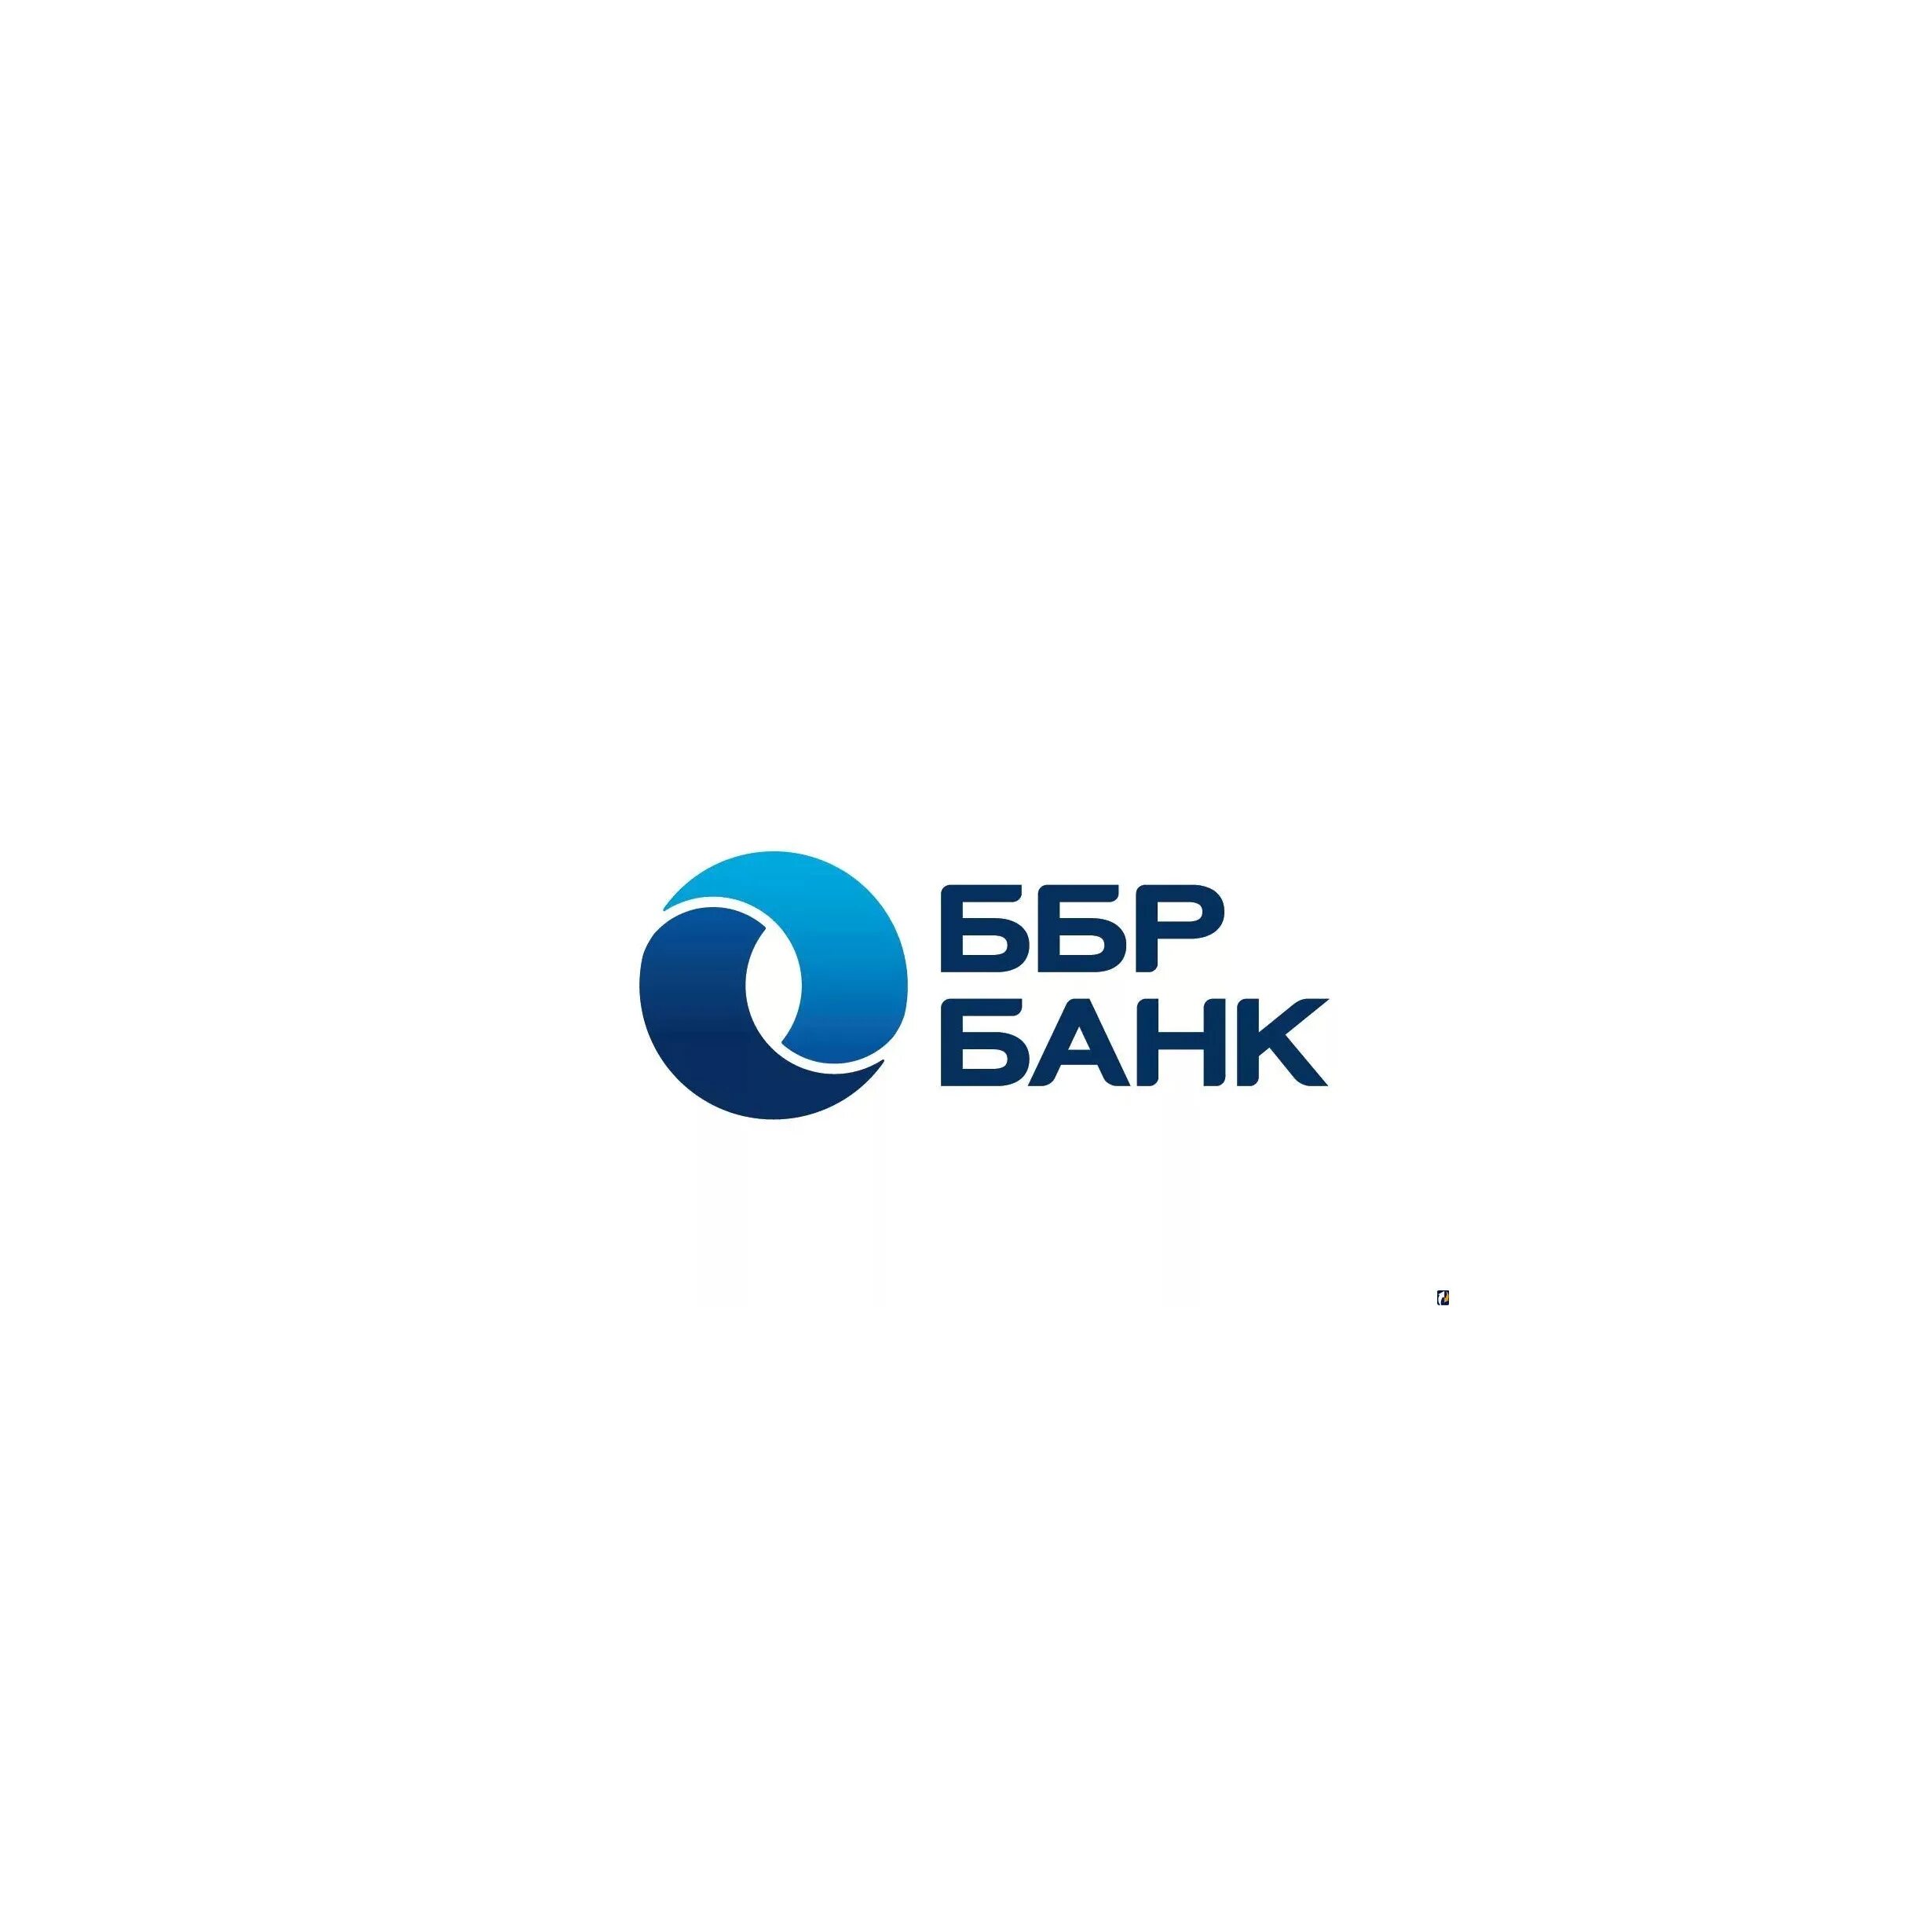 Ббр банк владивосток сайт. ББР банк. ББР банк логотип. Балтийский банк развития. Балтийский банк развития логотип.